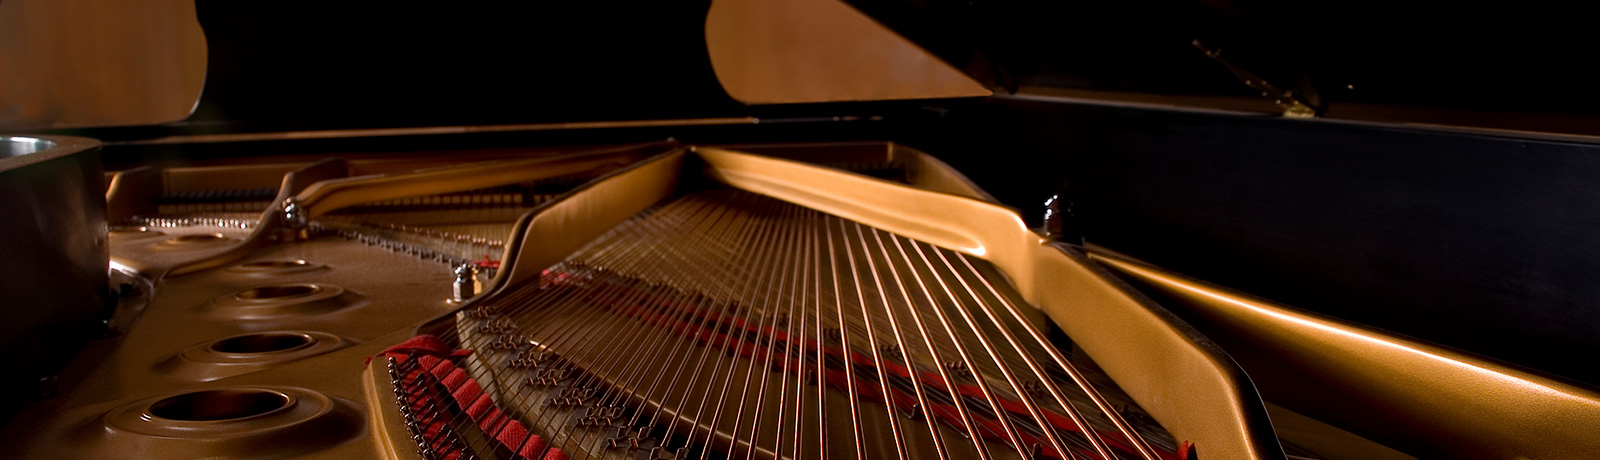 interior of piano